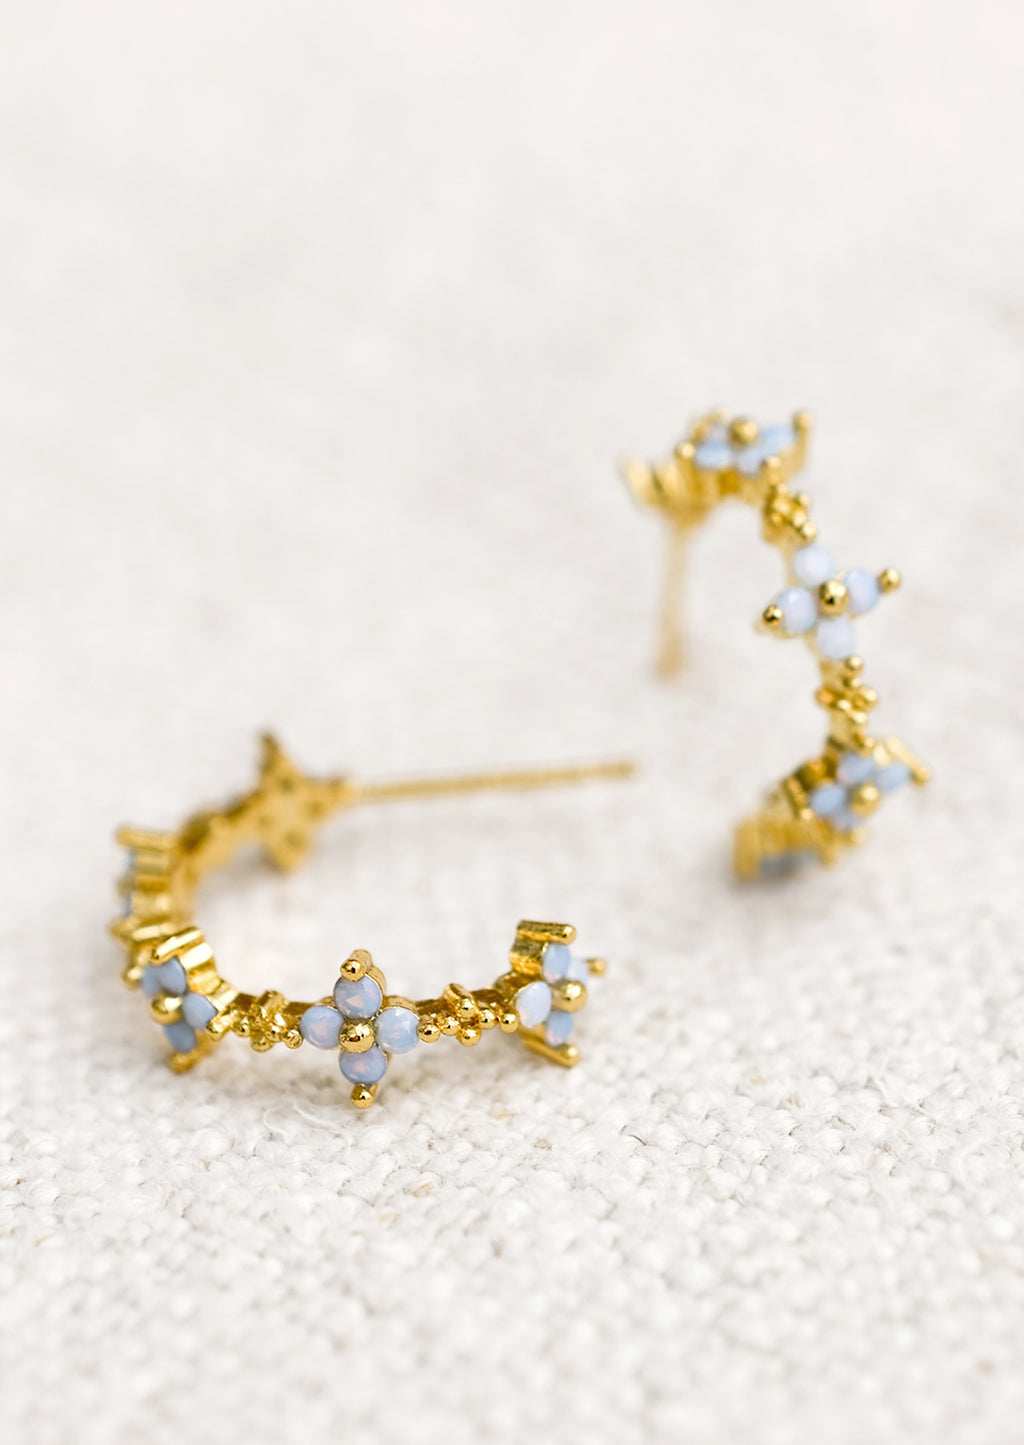 2: A pair of gold hoop earrings with periwinkle opal blue flowers.